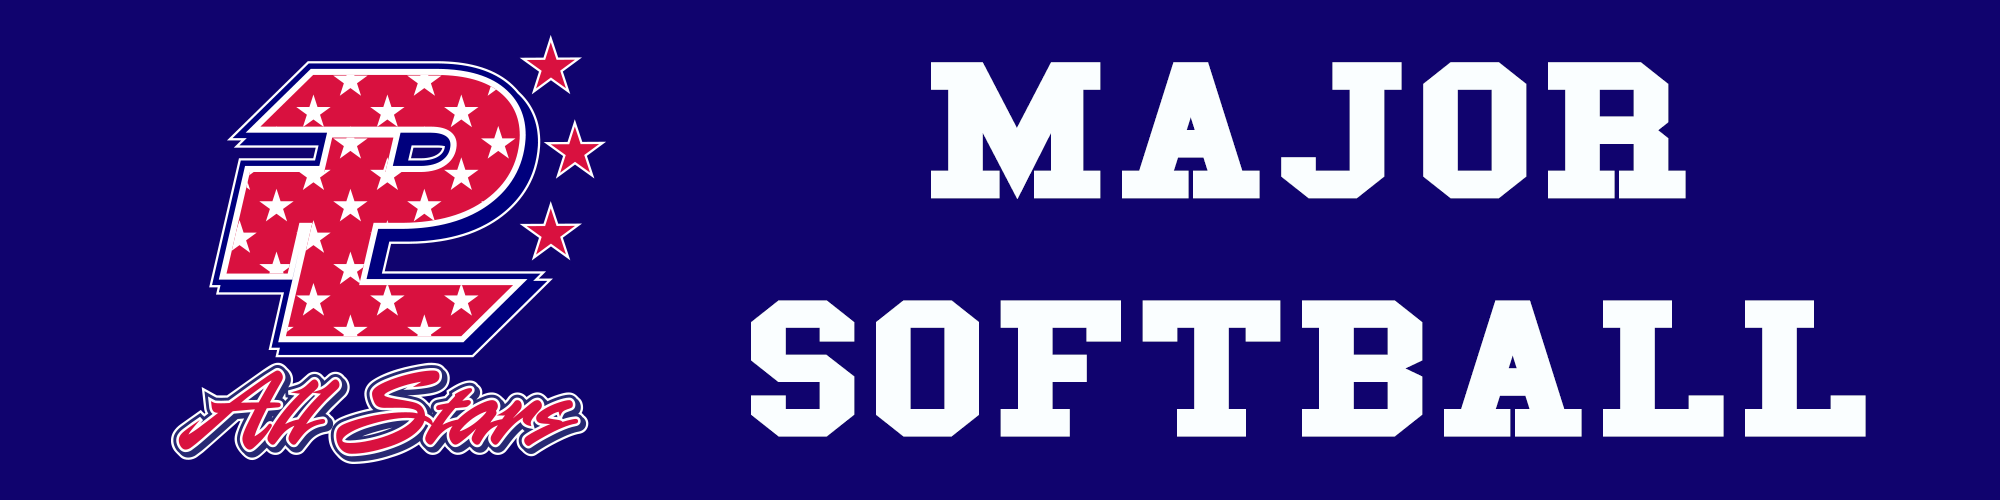 Major Softball